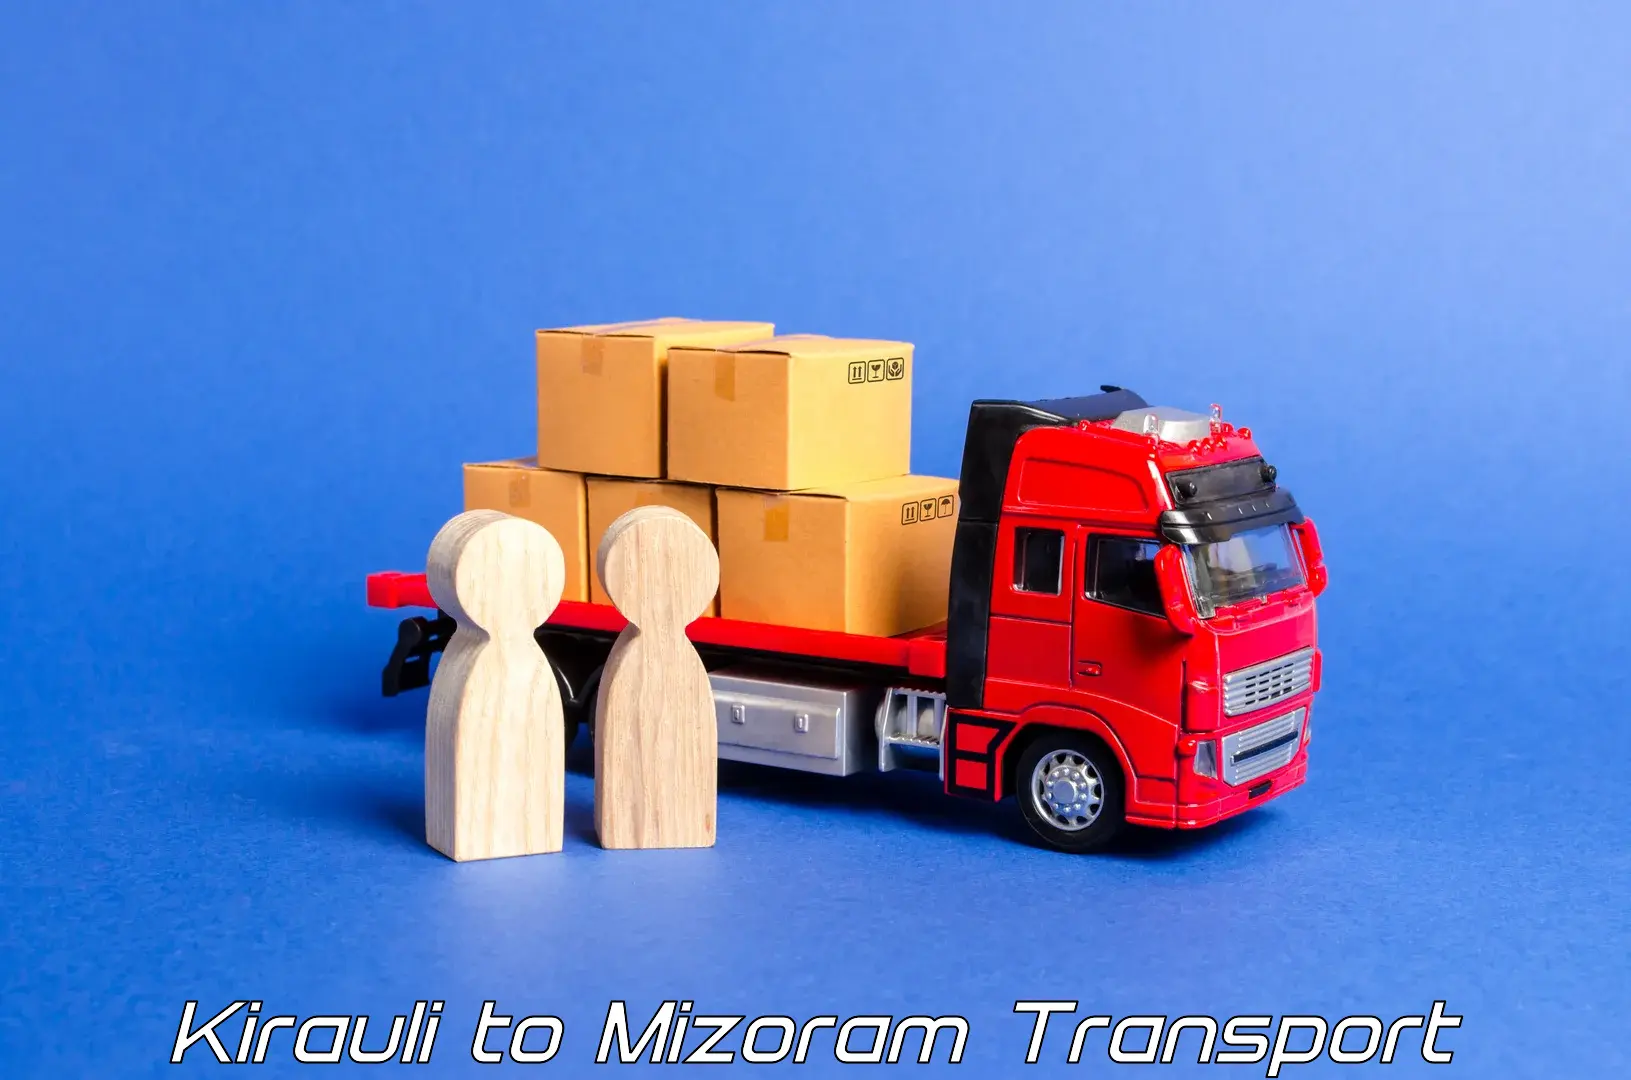 Land transport services Kirauli to Aizawl